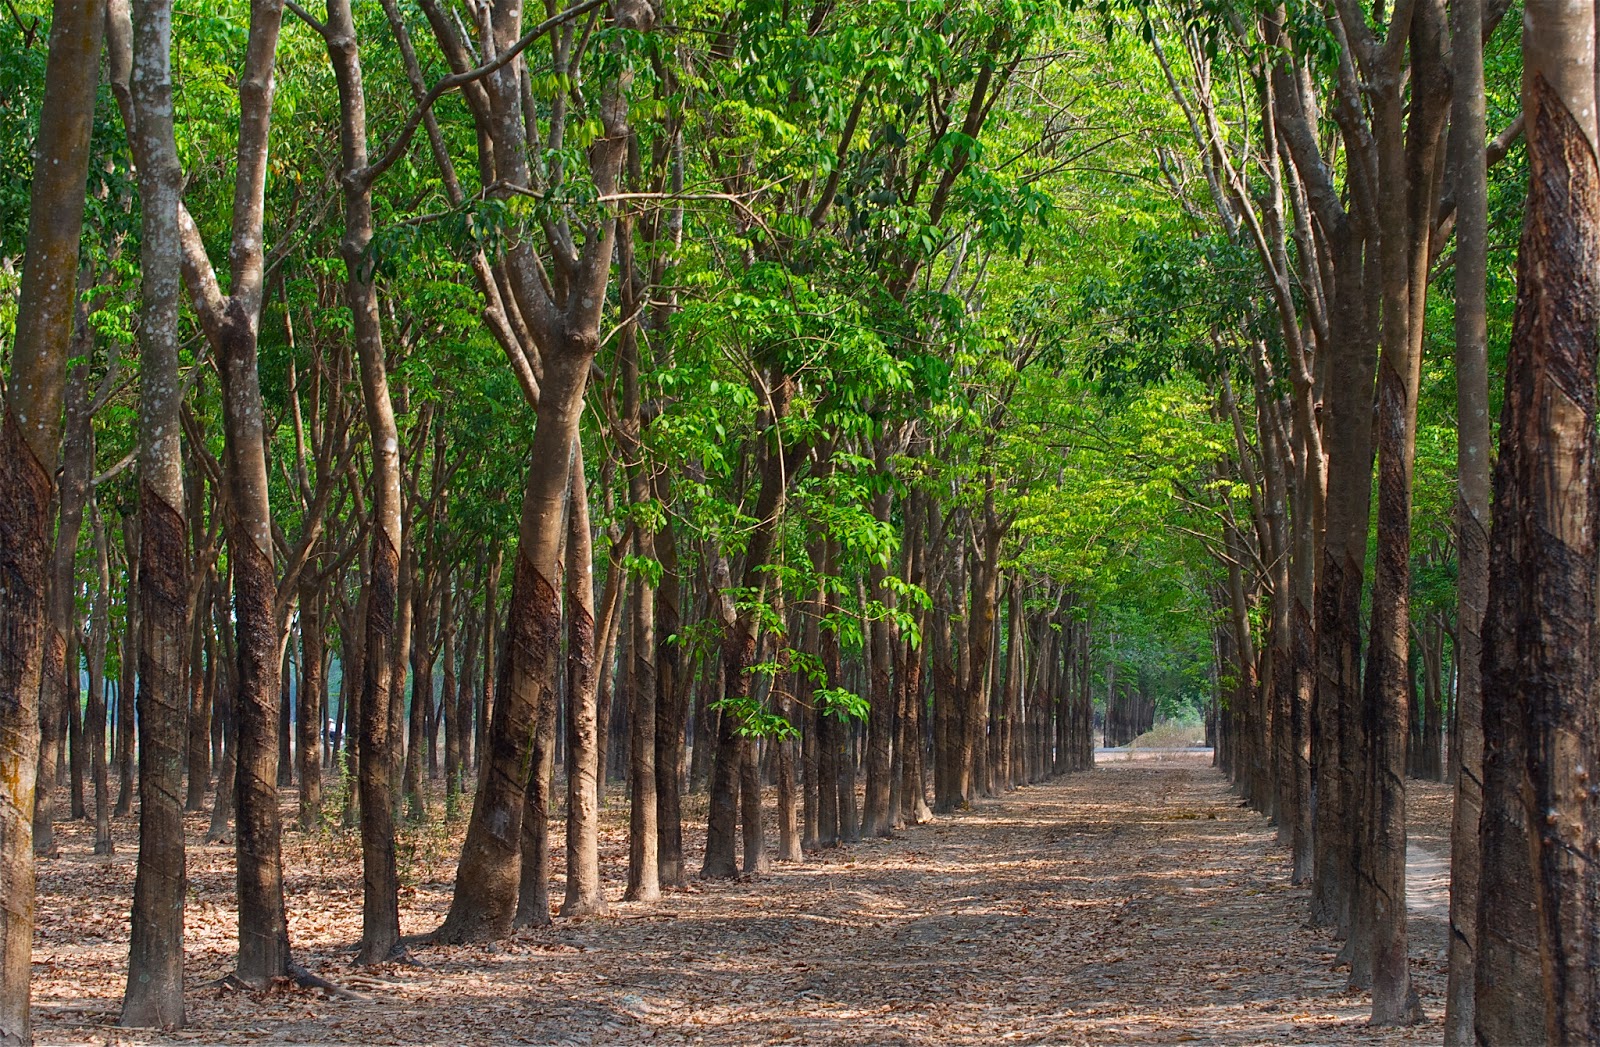 Việt kiều chủ rừng là một trong những khái niệm quen thuộc với người dân Việt Nam. Họ luôn thực hiện một sứ mệnh đặc biệt là bảo vệ rừng, gìn giữ các loài động thực vật quý hiếm của đất nước. Hãy xem bức ảnh và cảm nhận sự tận tâm, tri ân của những Việt kiều này.